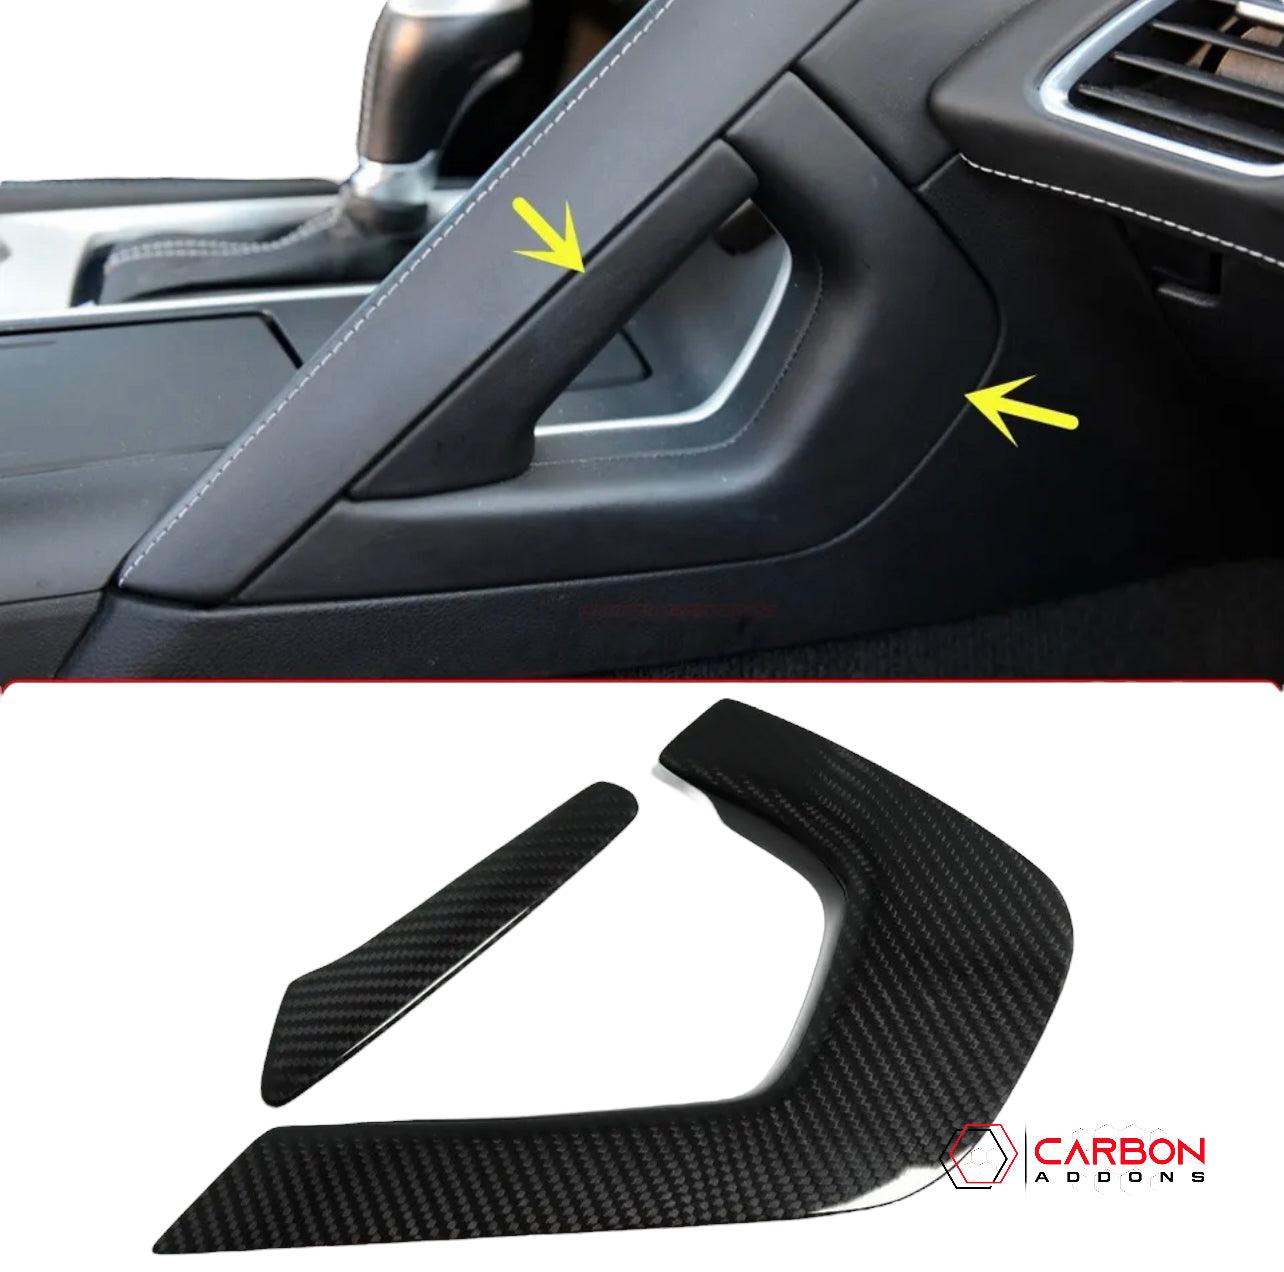 C7 Corvette 2014-2029 Carbon Fiber Center Console Handle Trim Covers - carbonaddons Carbon Fiber Parts, Accessories, Upgrades, Mods